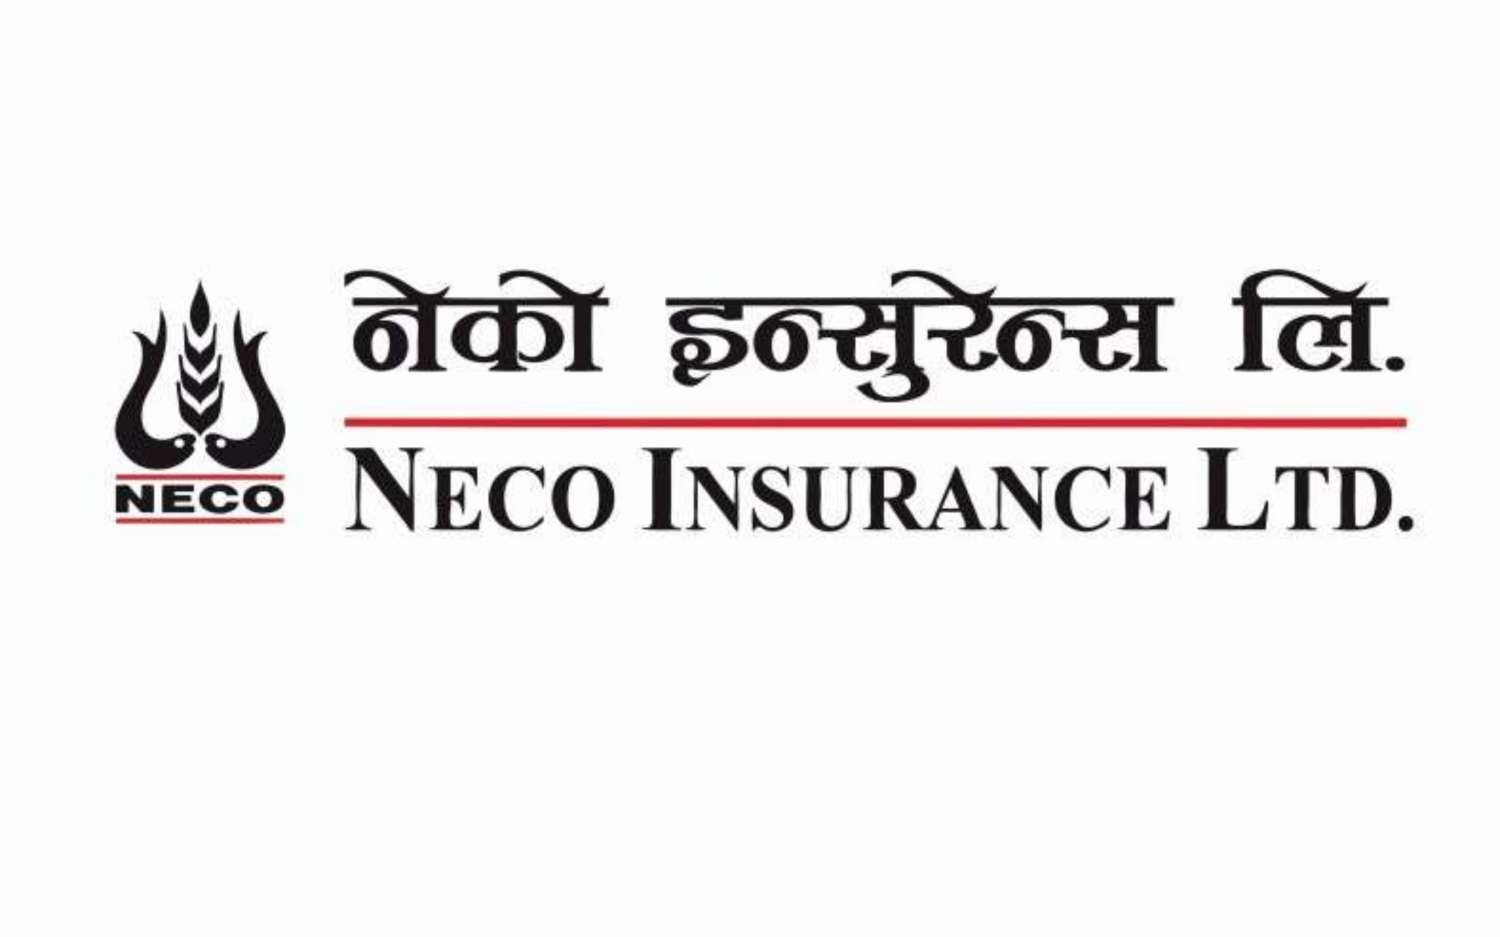 Neco Insurance Celebrates 28th Anniversary 